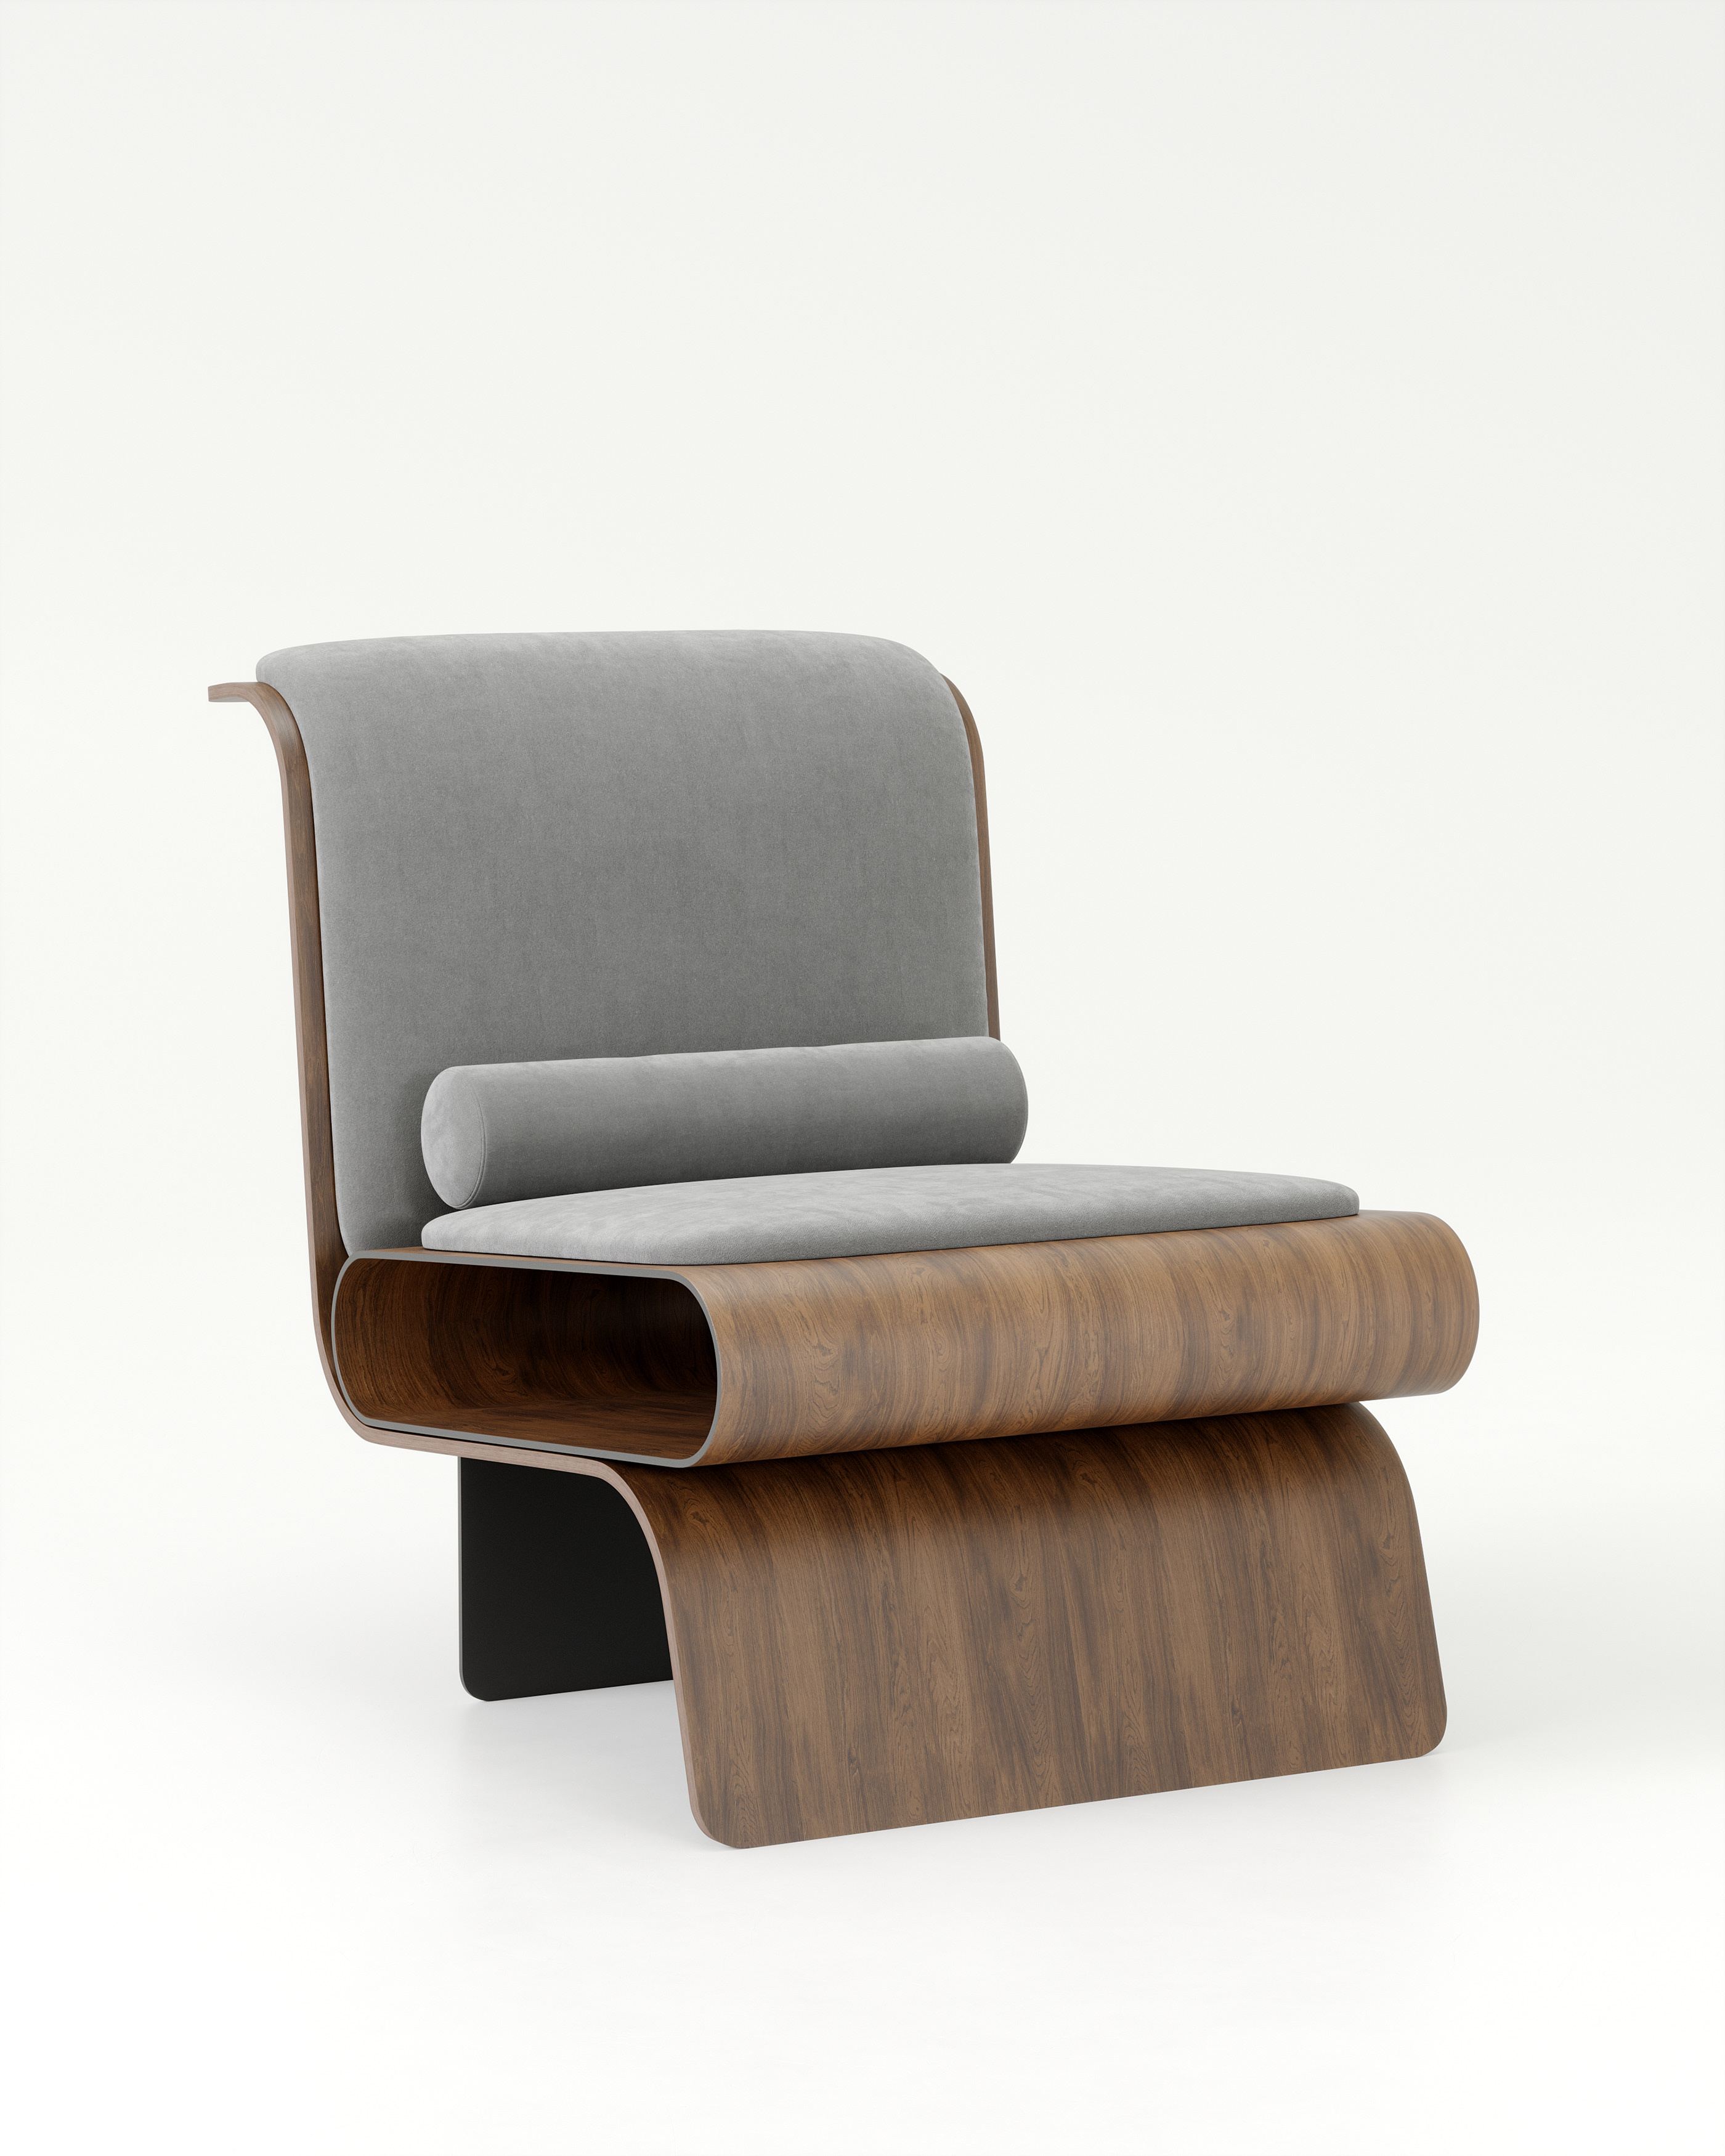 新颖独特的创意椅子设计让家更有品味